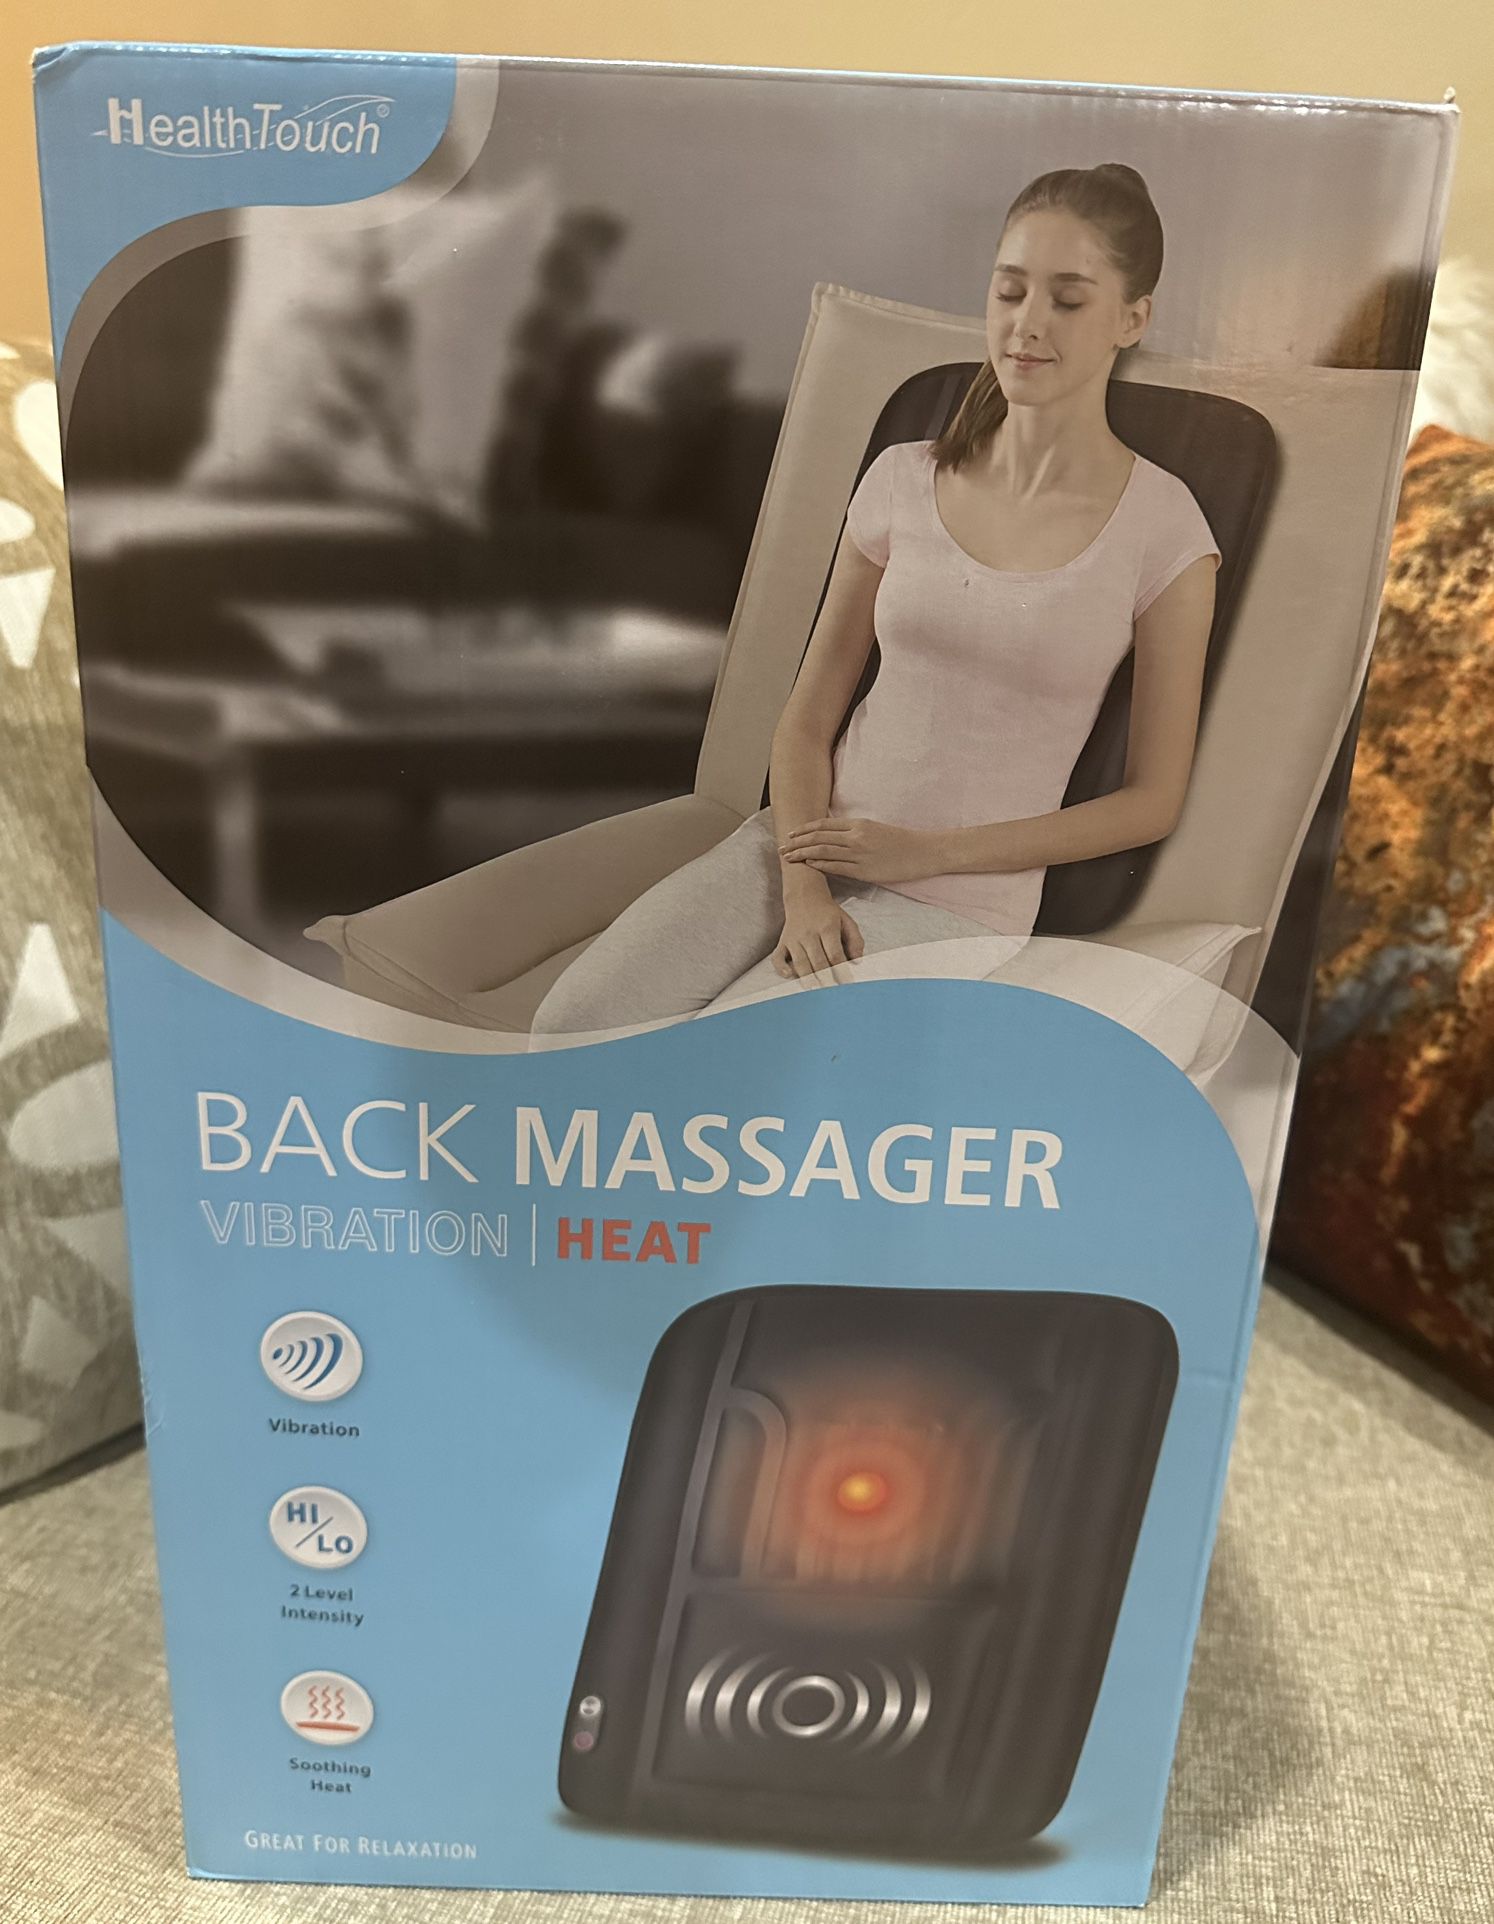 Brand New: HealthTouch Back Massager